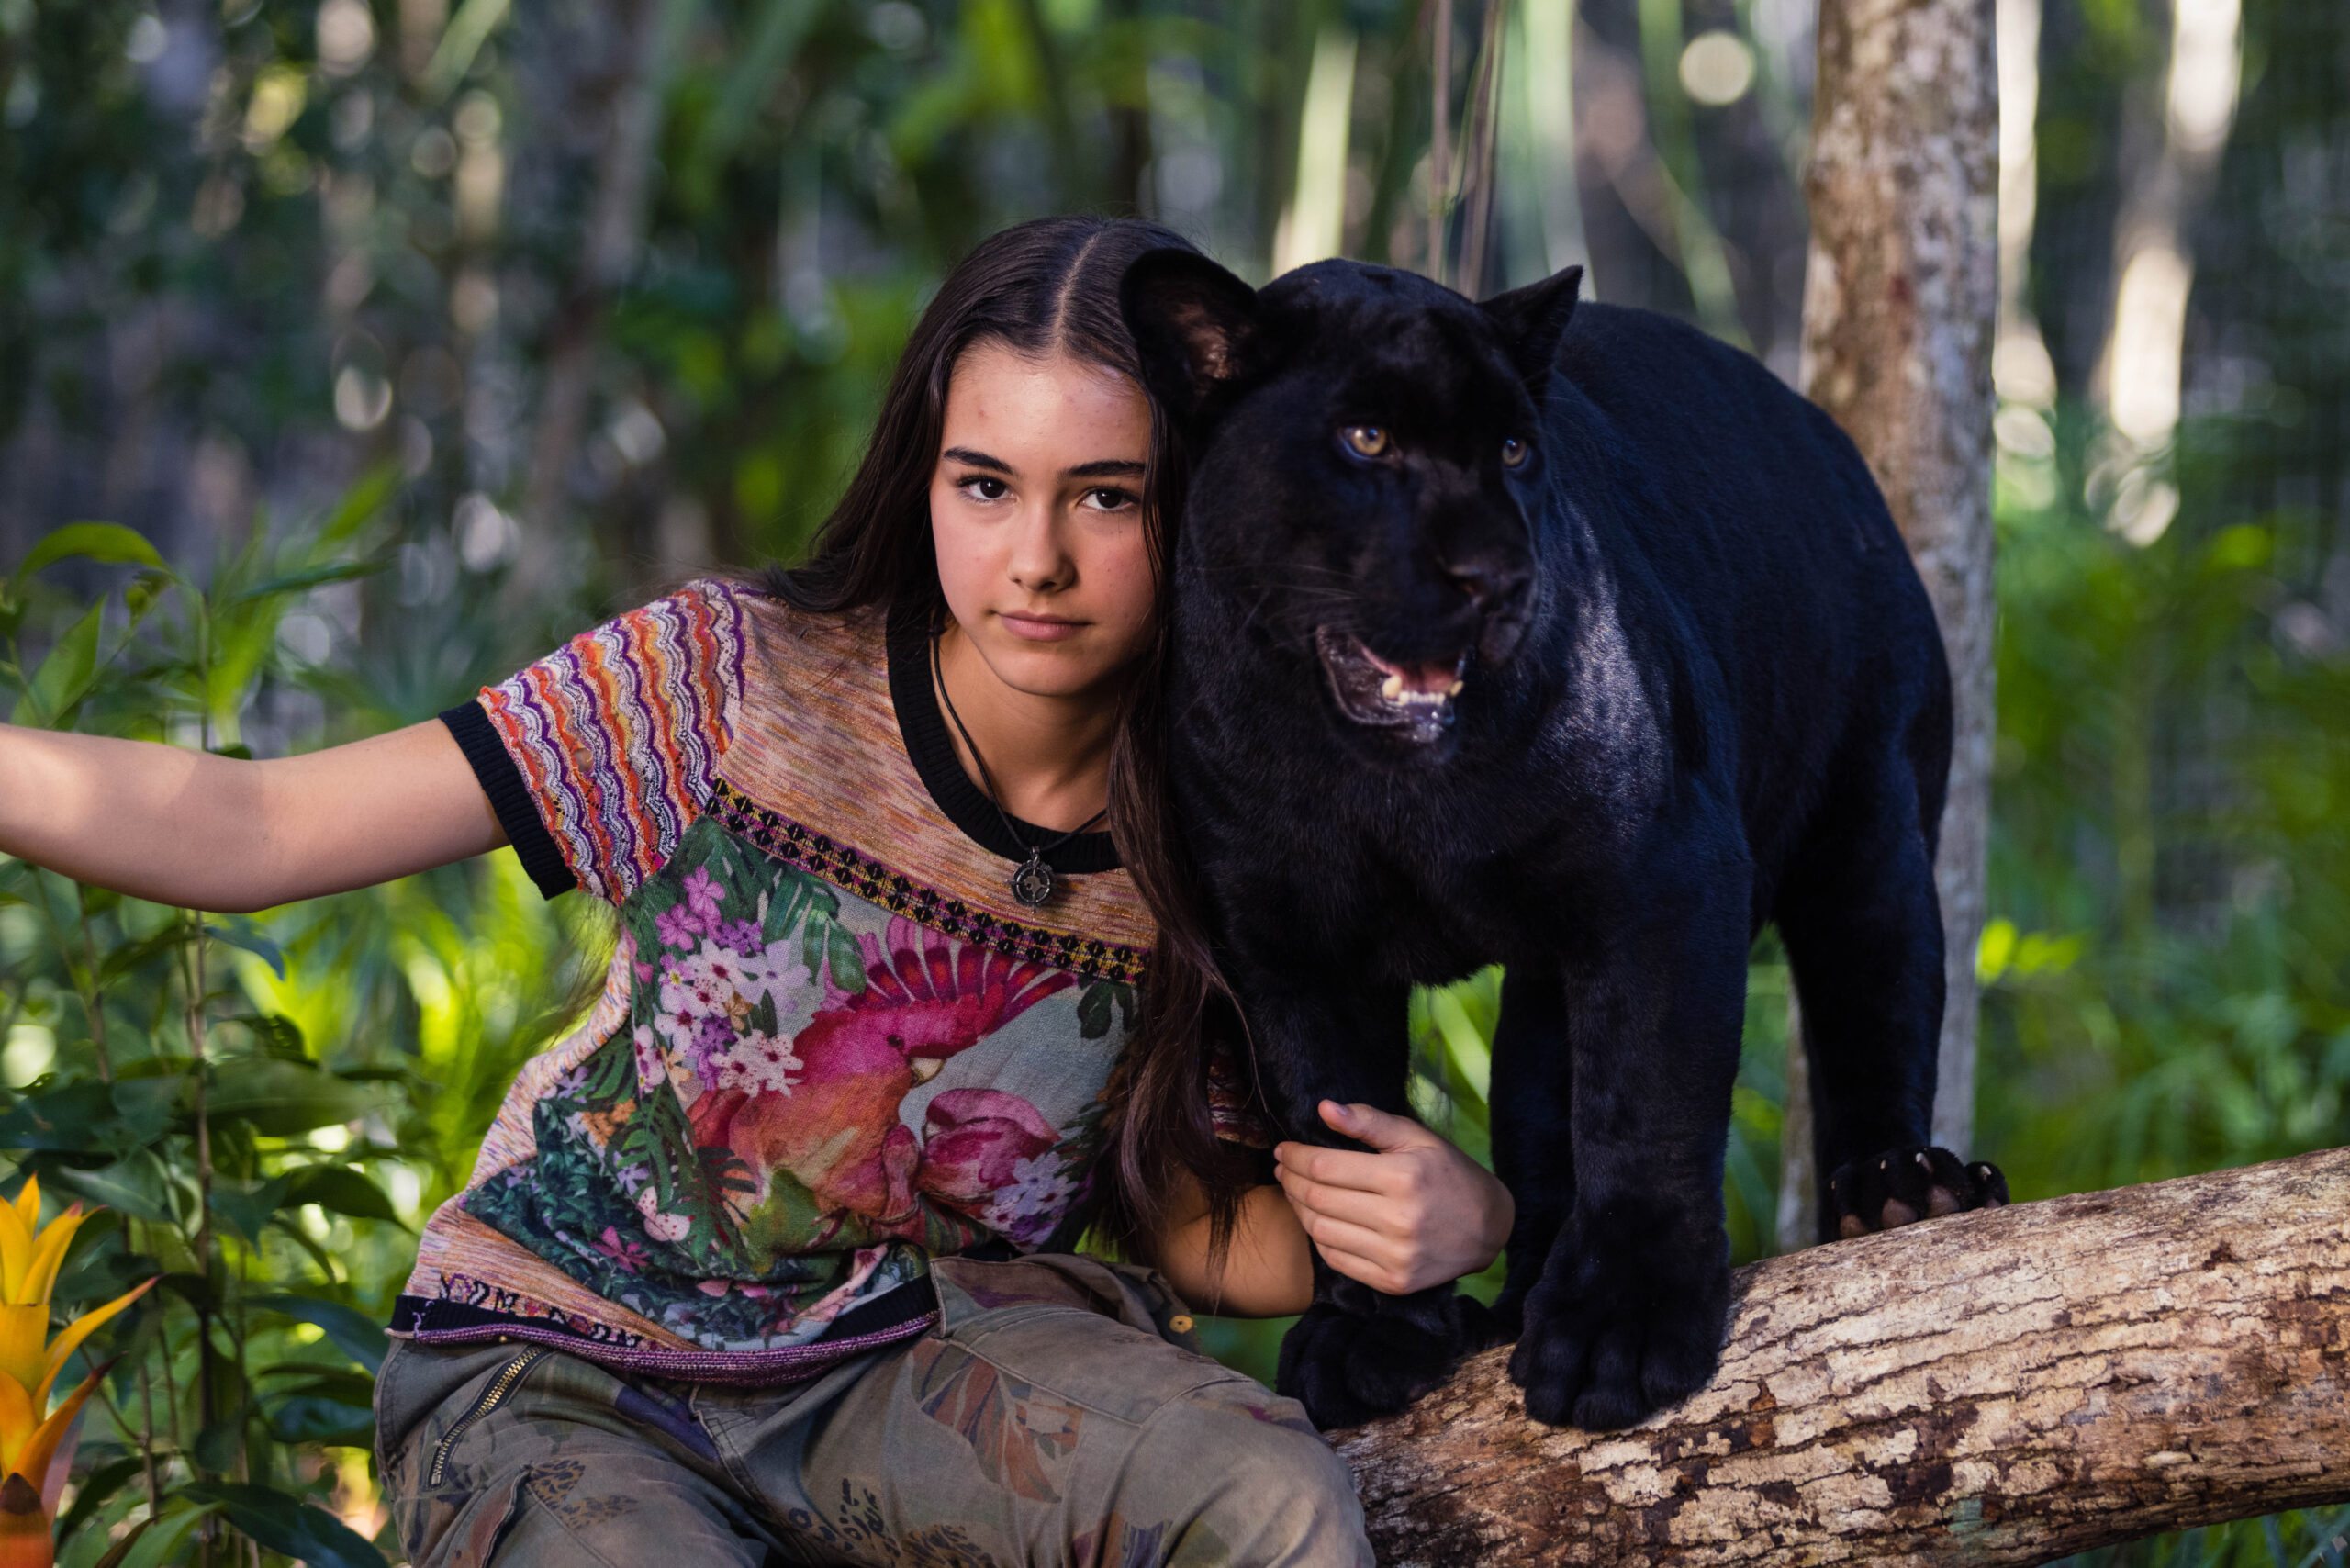 Emma i czarny jaguar – wygraj zaproszenie do kina!